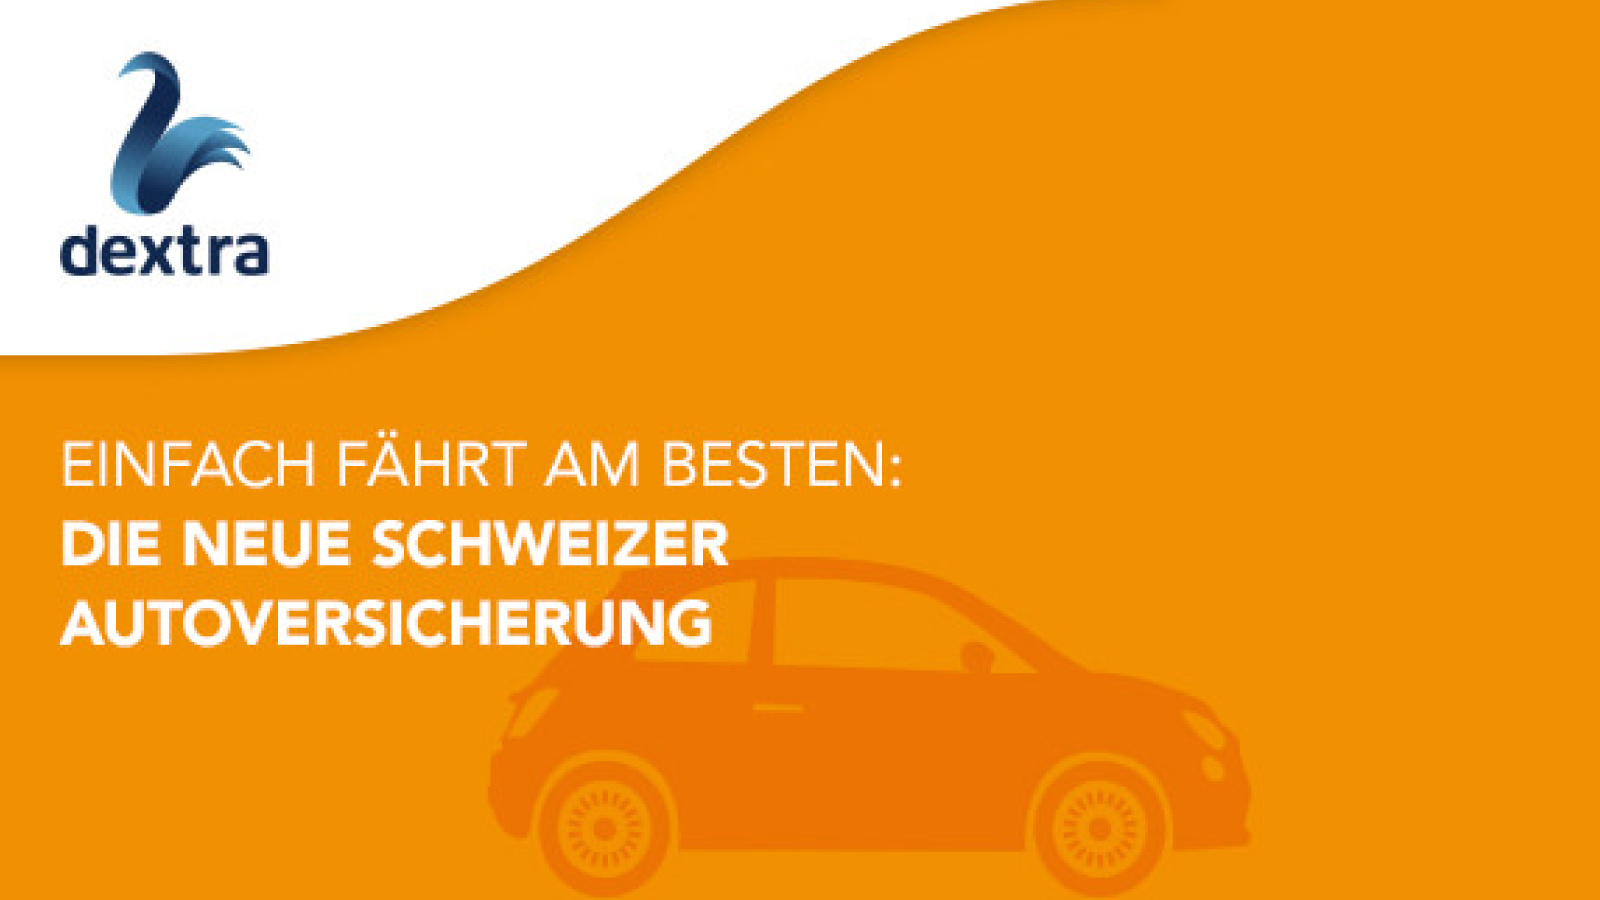 Die erste volldigitale Autoversicherung der Schweiz geht an den Start